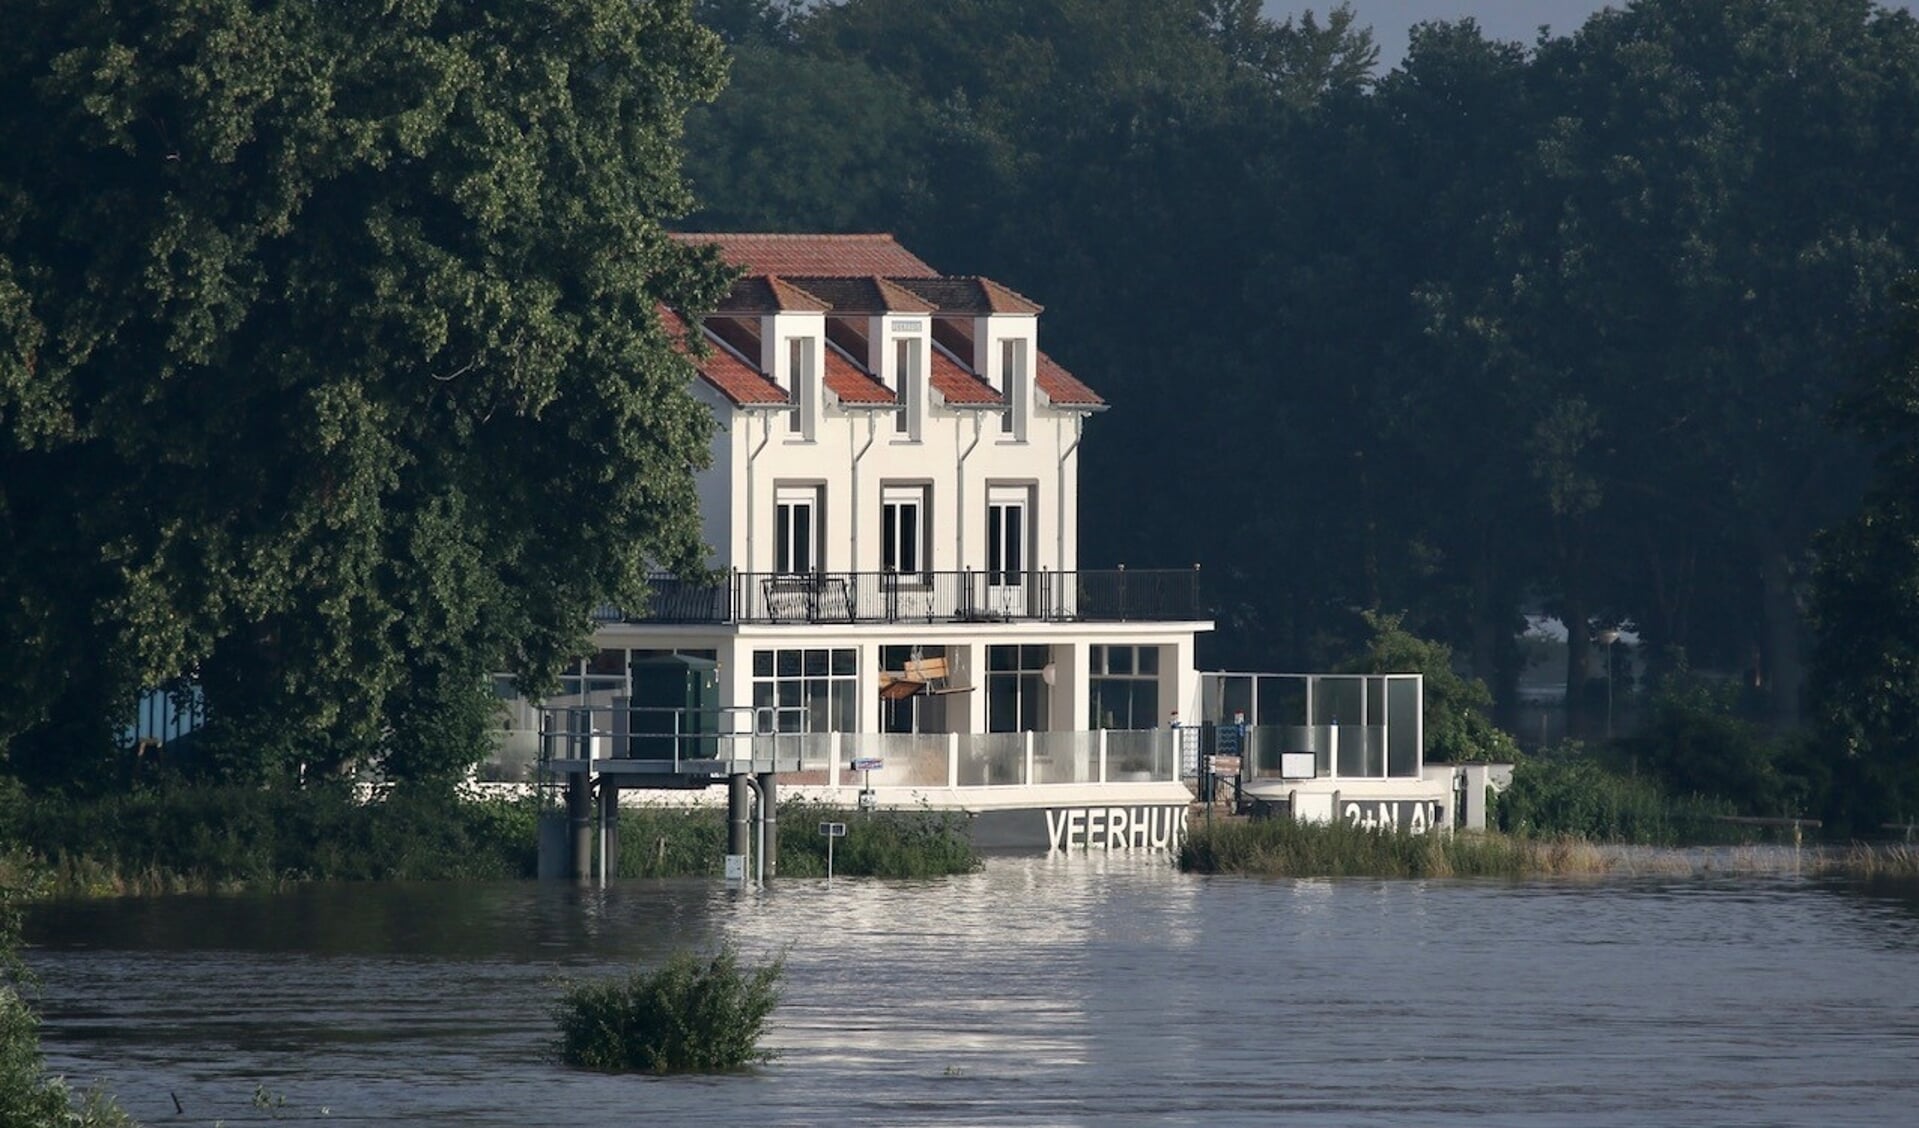 'Ruimte voor de Maas moet overstromingen bij extreem hoogwater, zoals afgelopen zomer, verkleinen. 